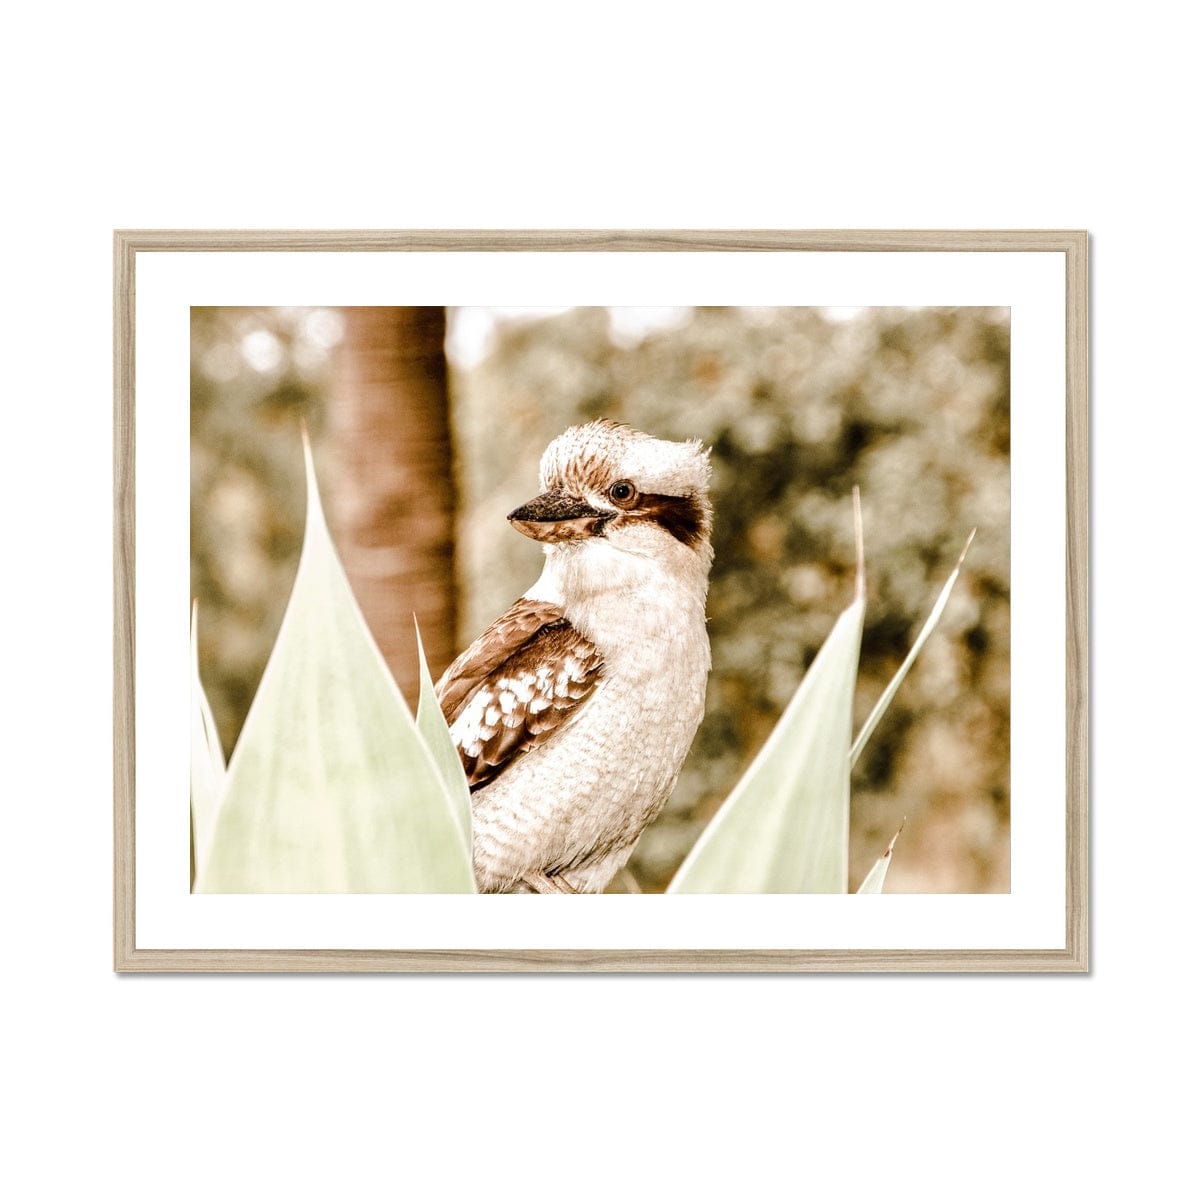 Seek & Ramble Framed 24"x18" (60.96x45.72cm) / Natural Frame Kookaburra Colours Framed & Mounted Print